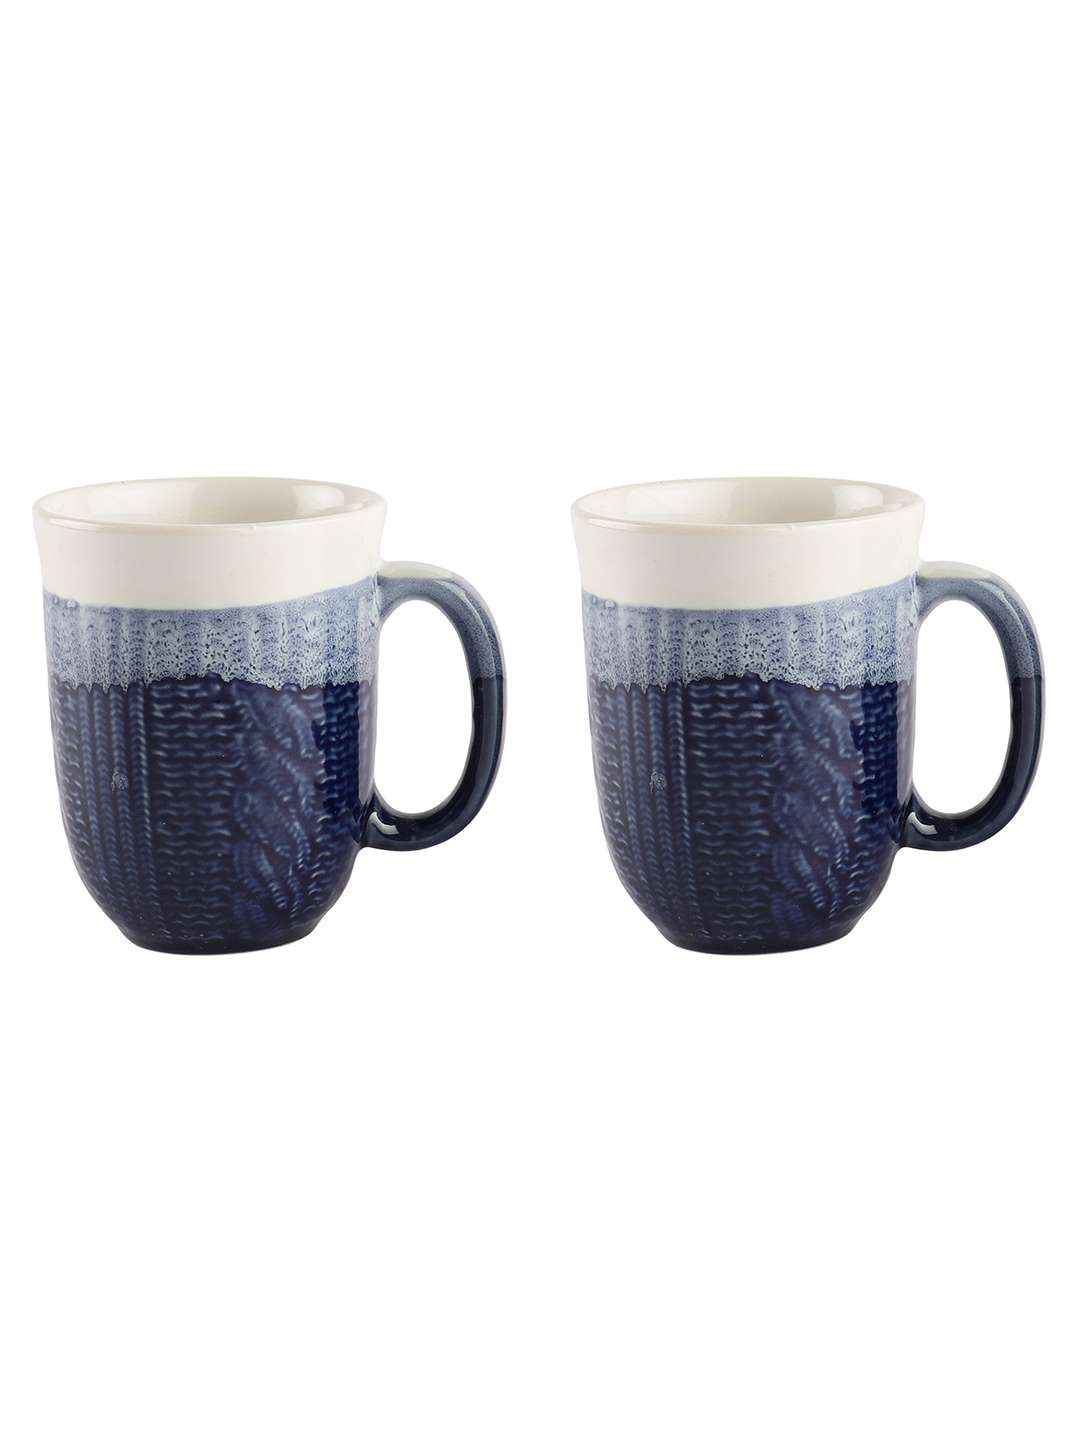 Dual Tone textured Mugs